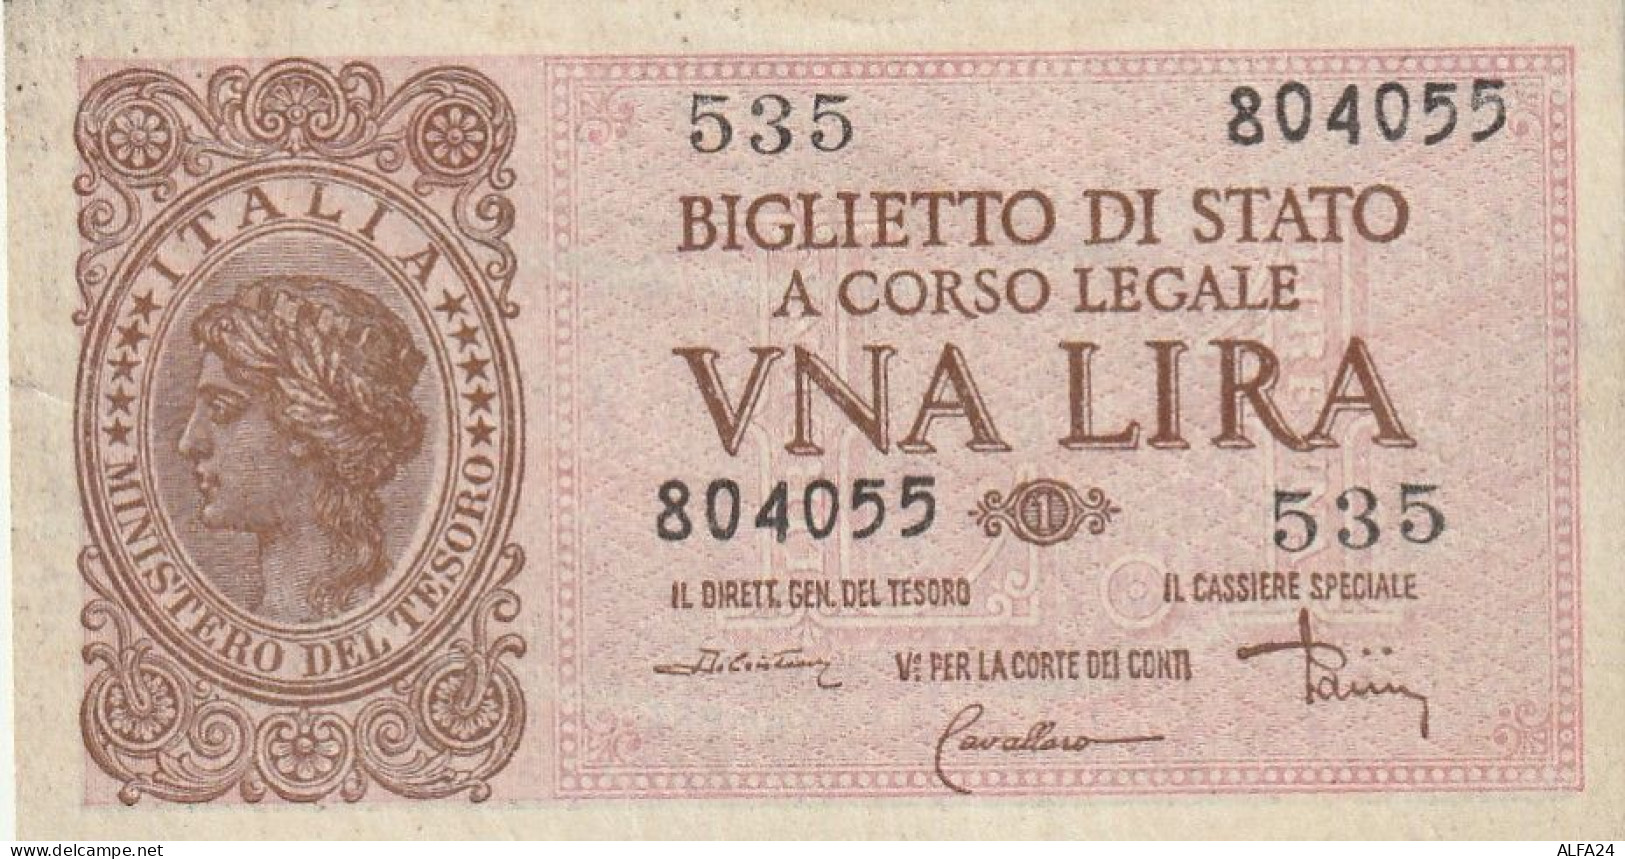 BANCONOTA BIGLIETTO DI STATO ITALIA 1 LIRA EF  (B_369 - Italia – 1 Lira